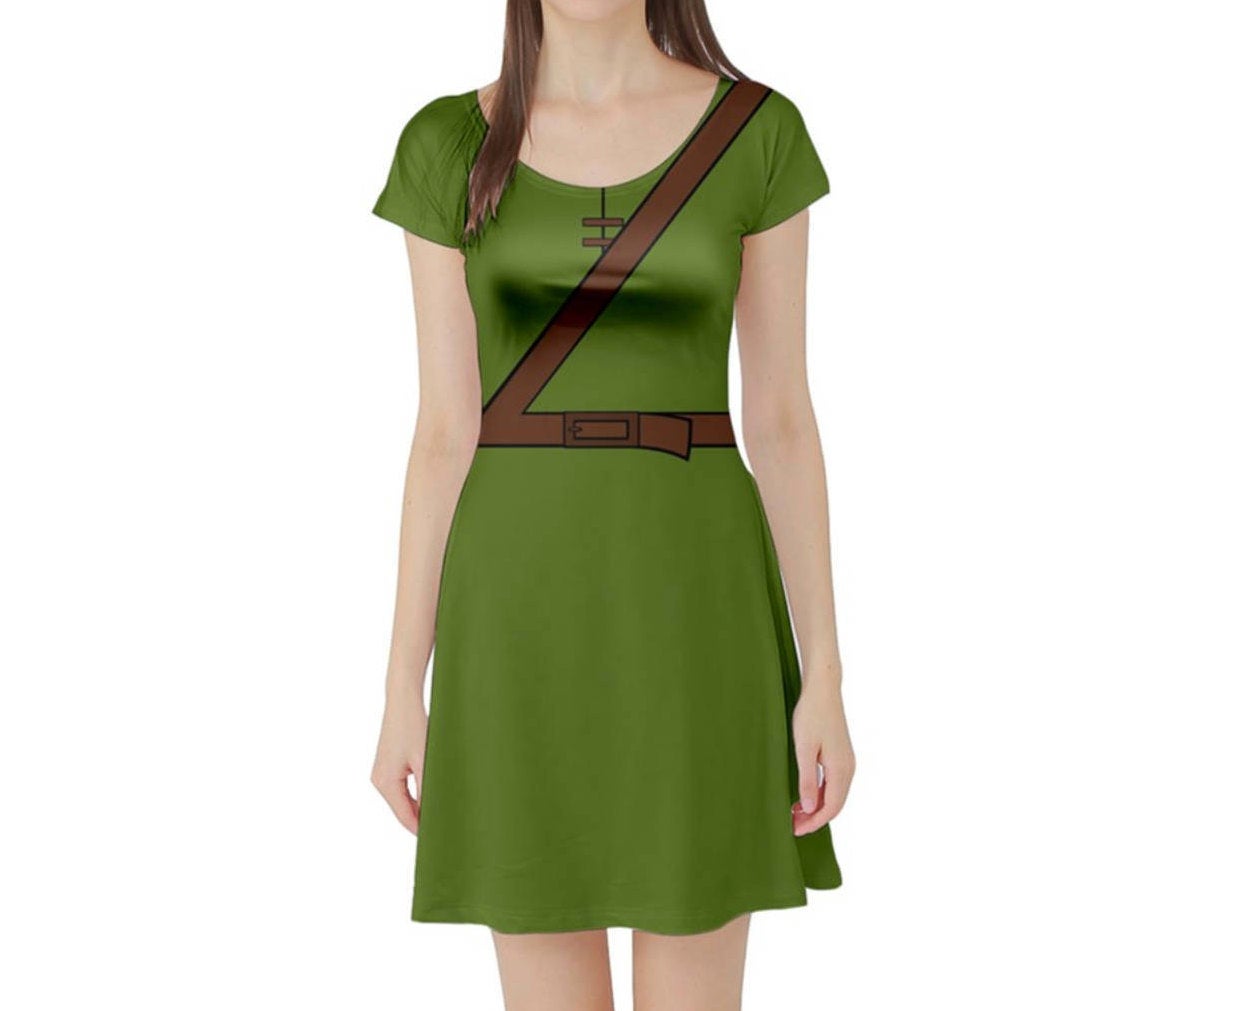 Robin Hood Inspired Short Sleeve Skater Dress